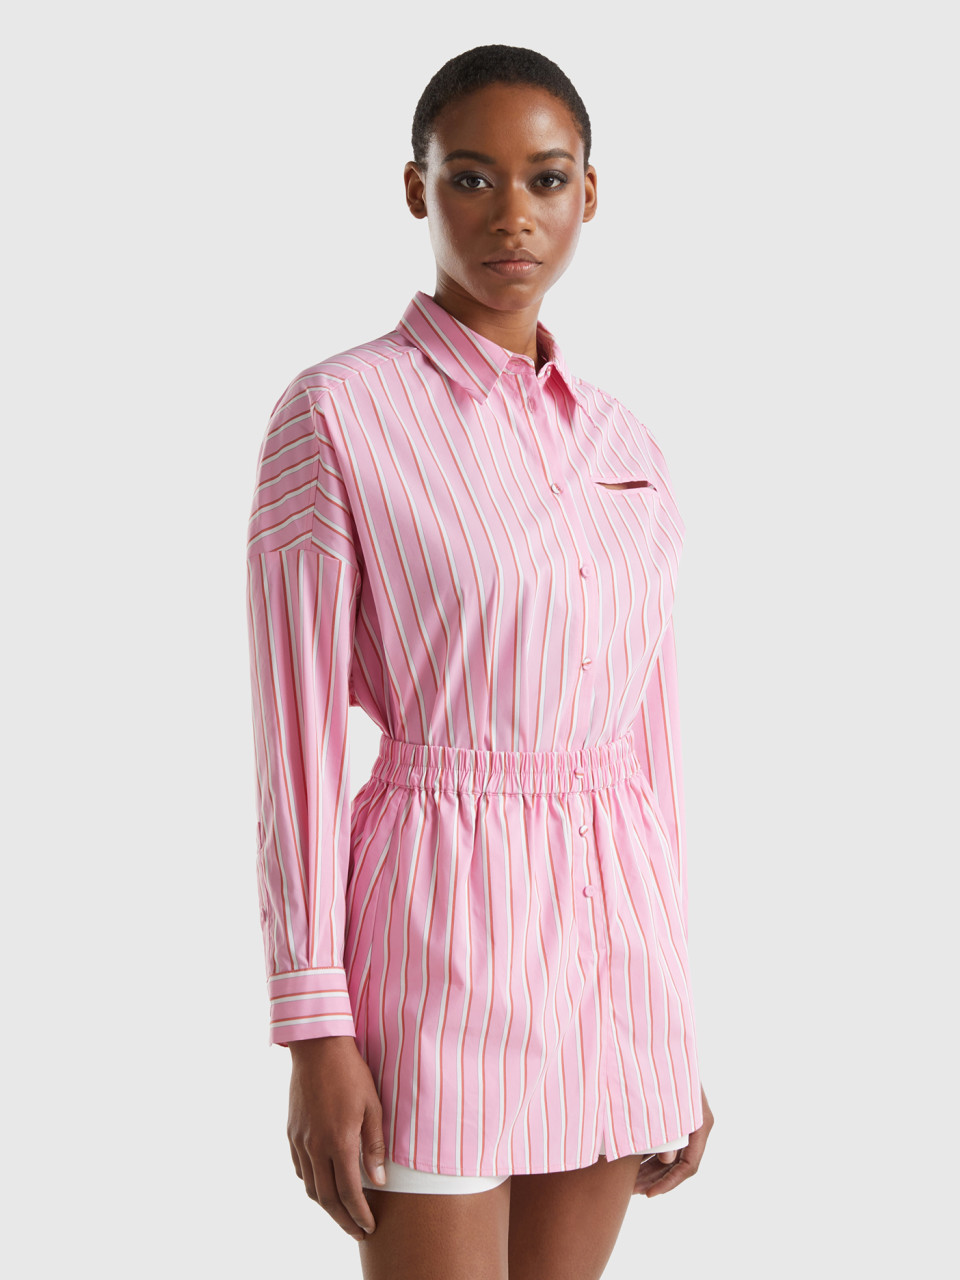 Benetton, Wide Striped Shirt, Pink, Women